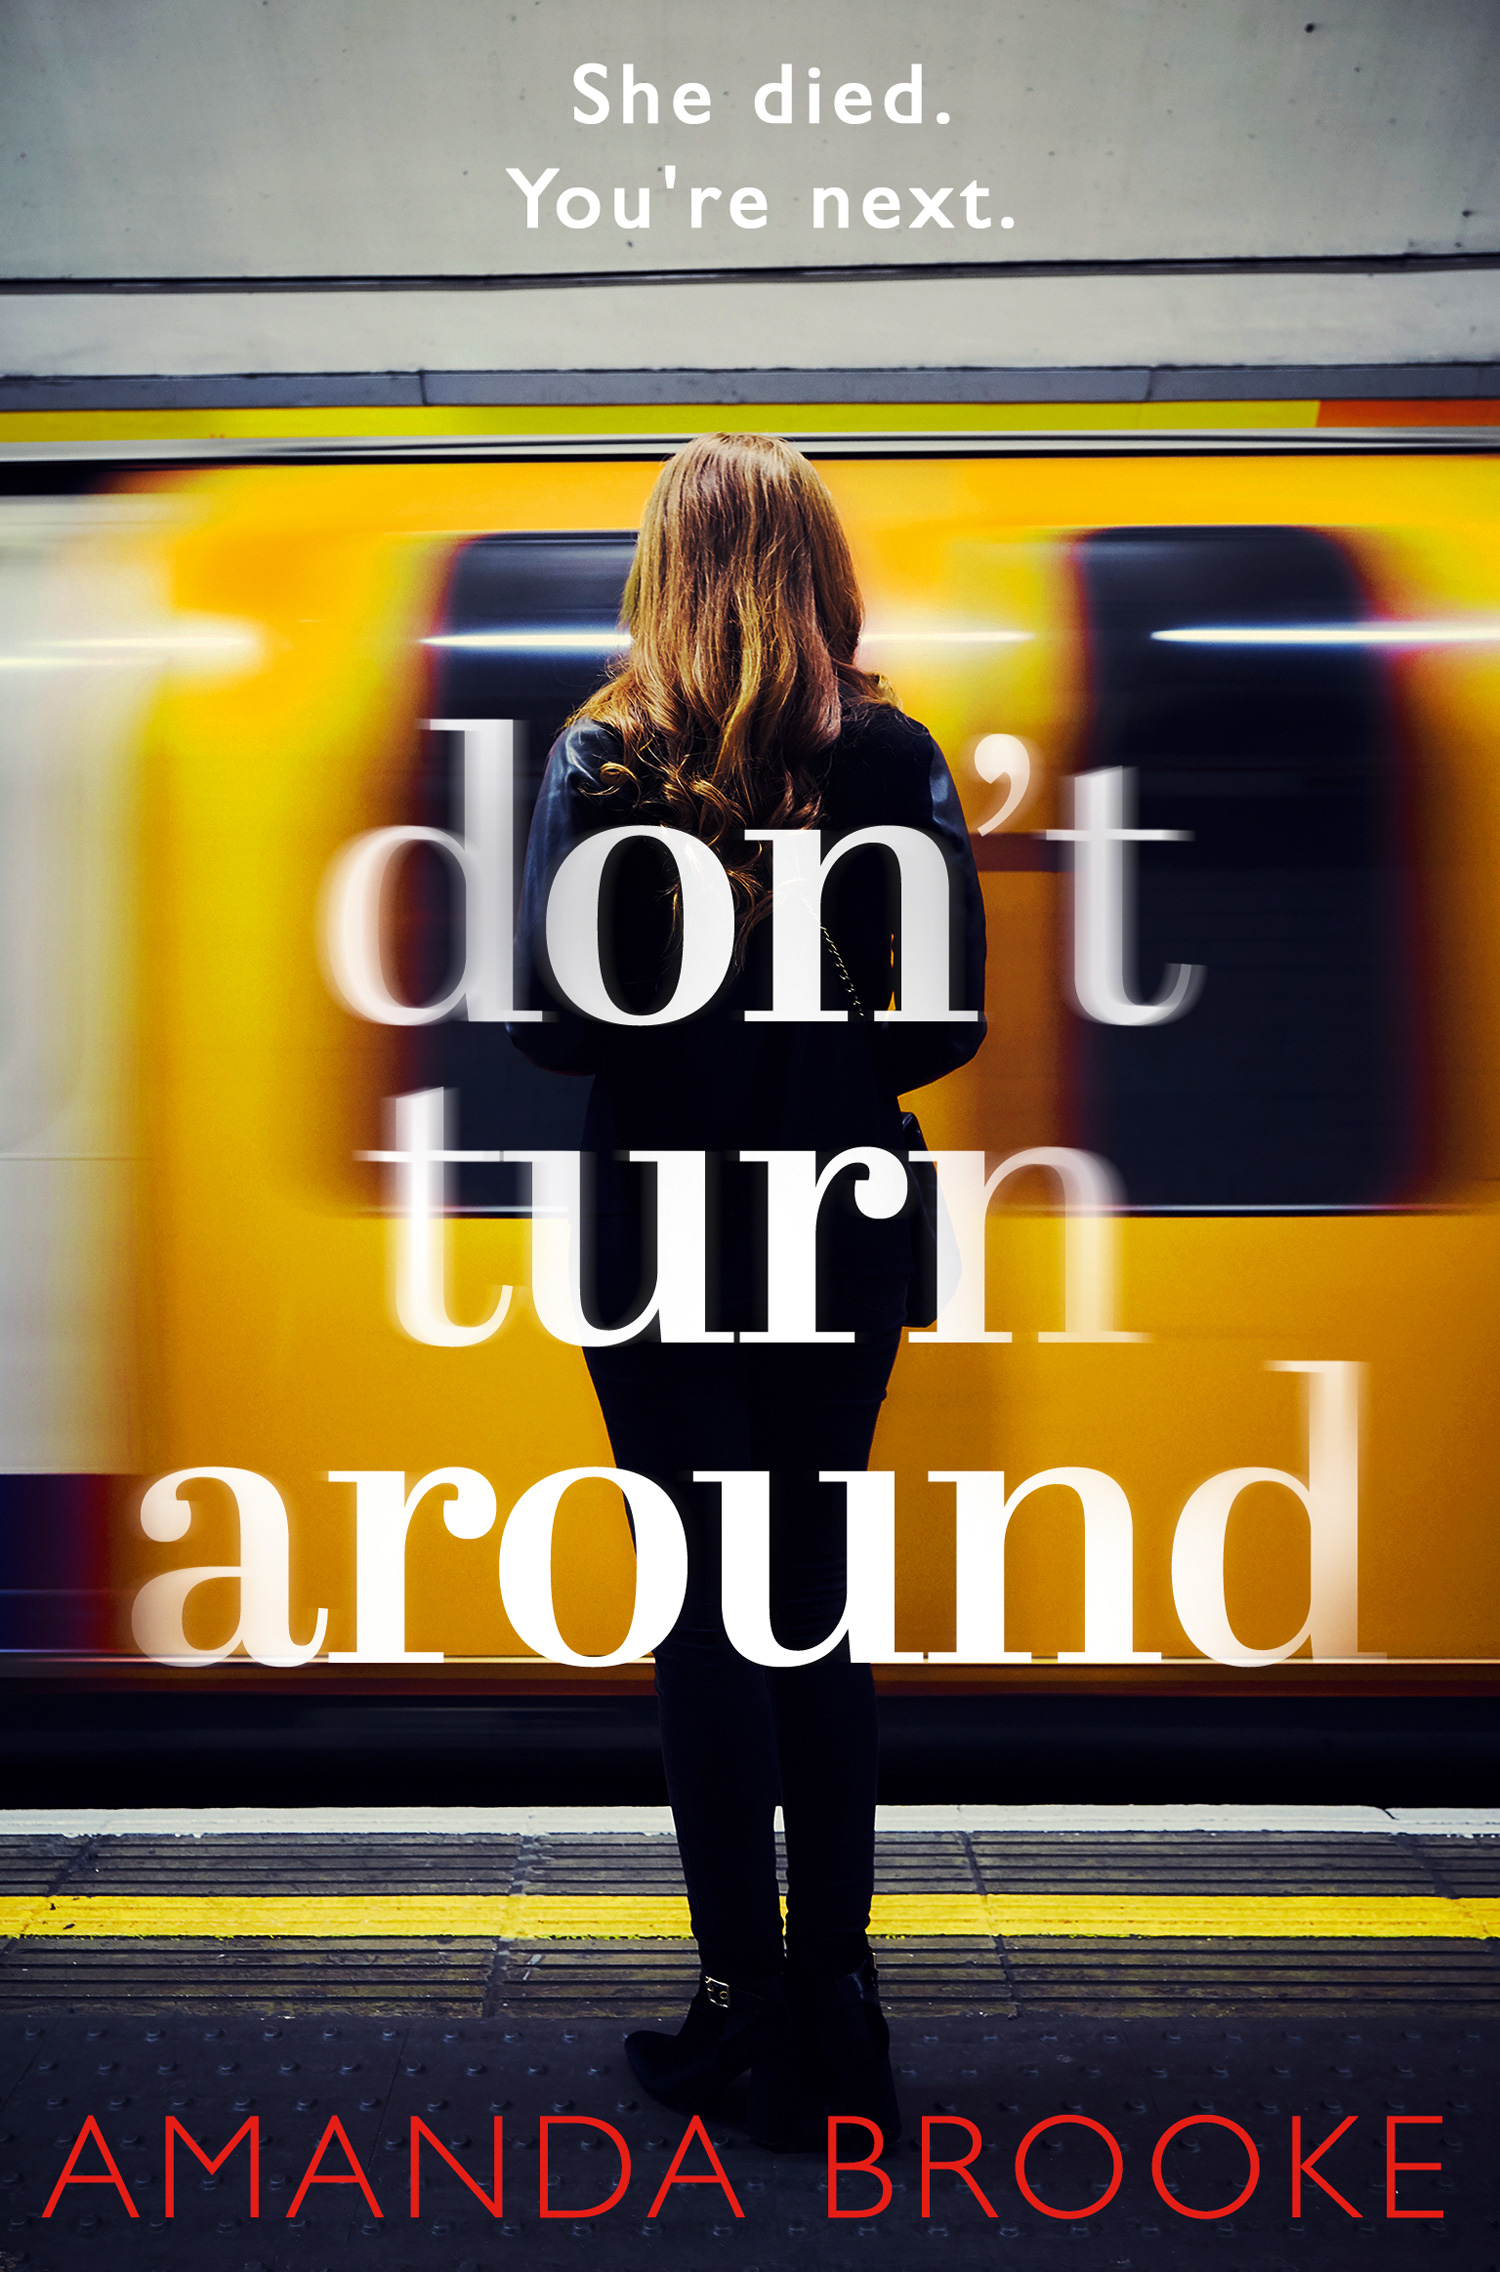 Dont Turn Around